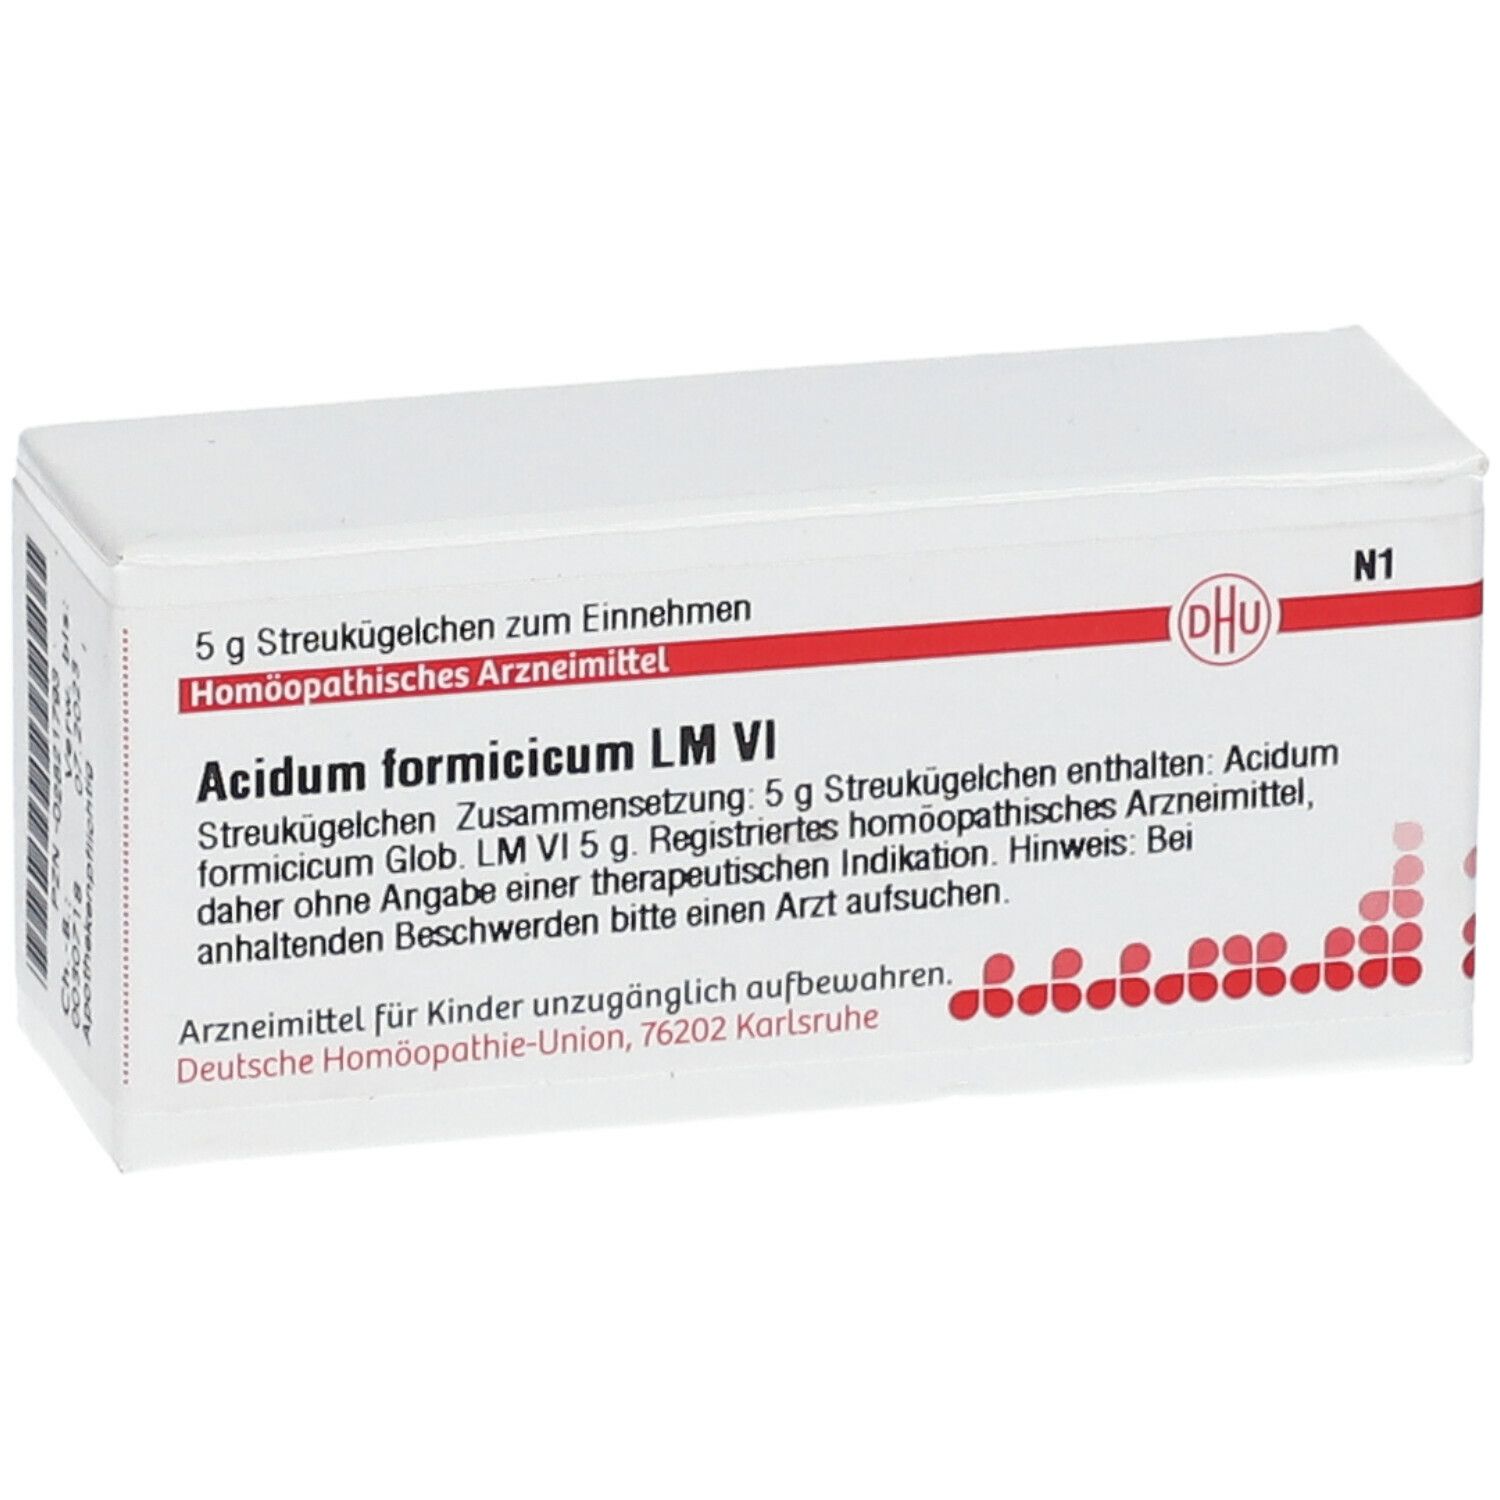 DHU Acidum Formicicum LM VI